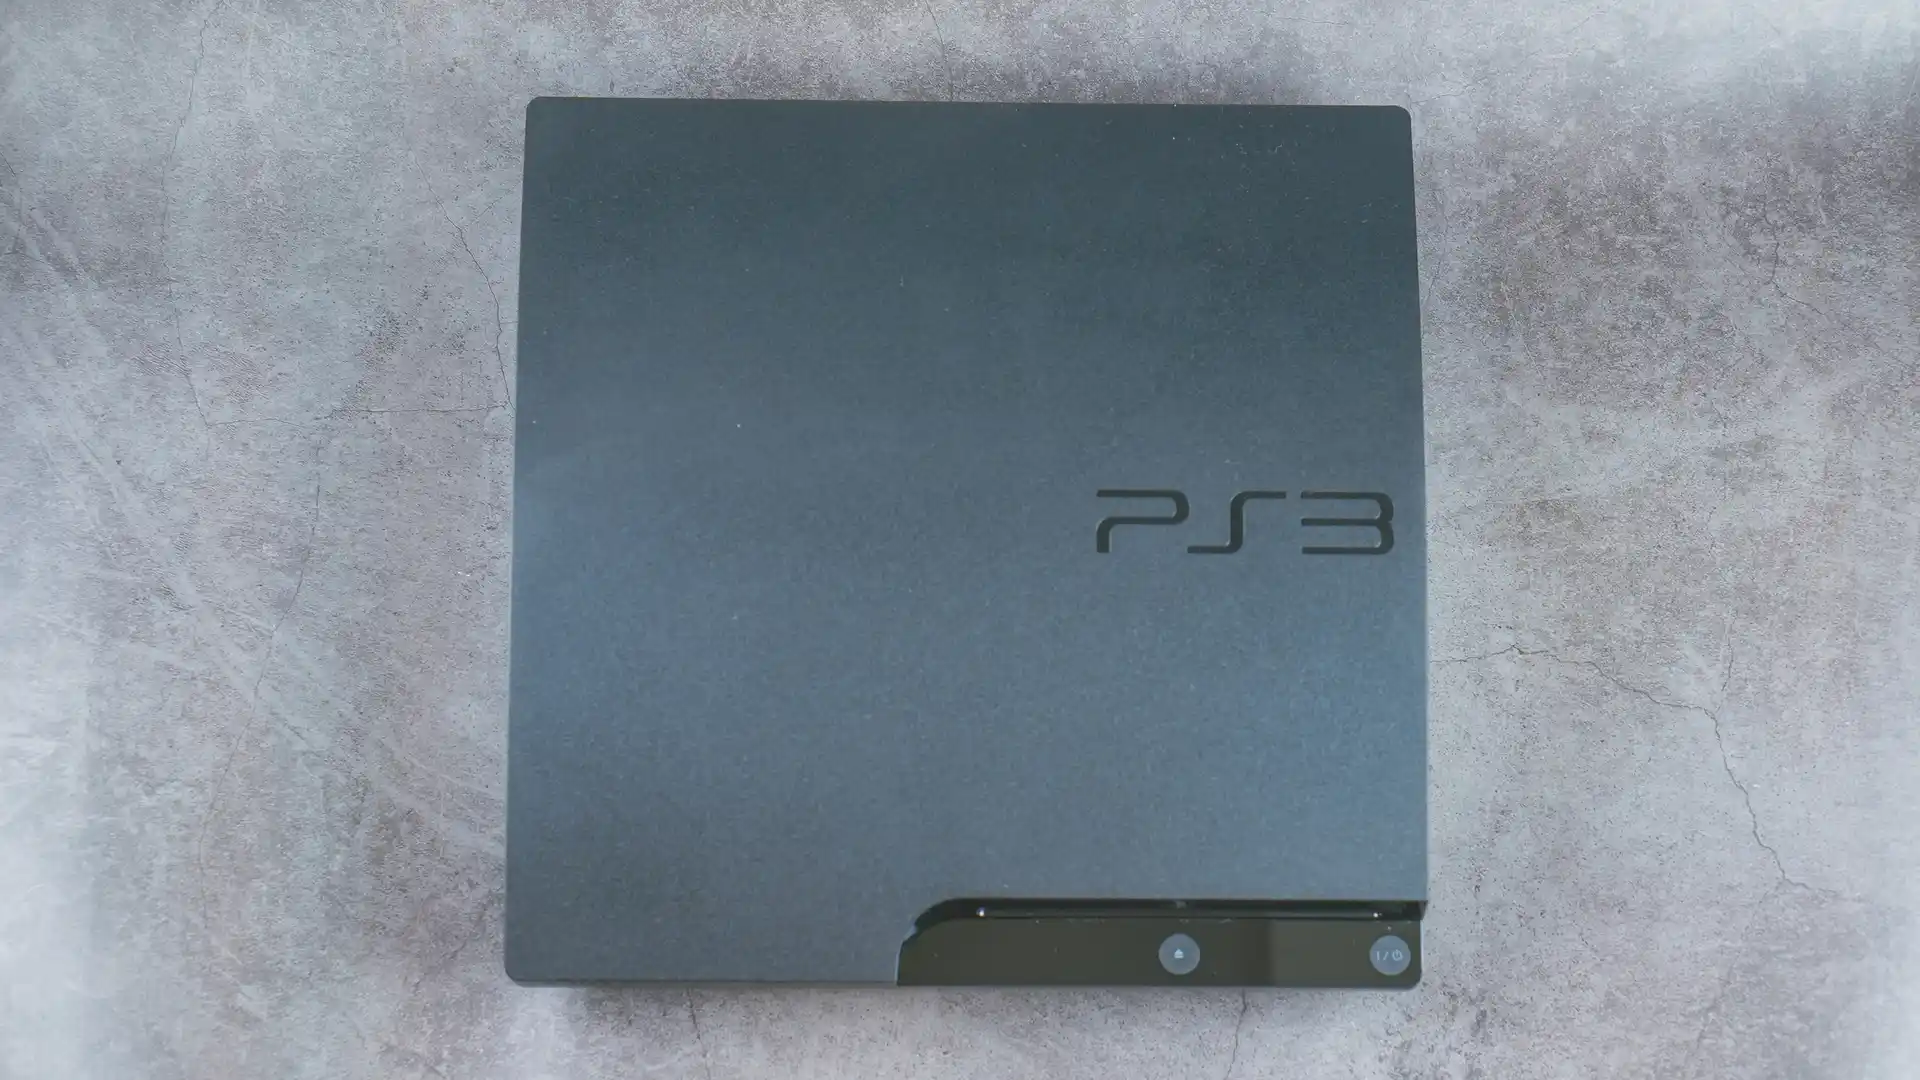 Um console do PS3 usado como destaque principal na imagem